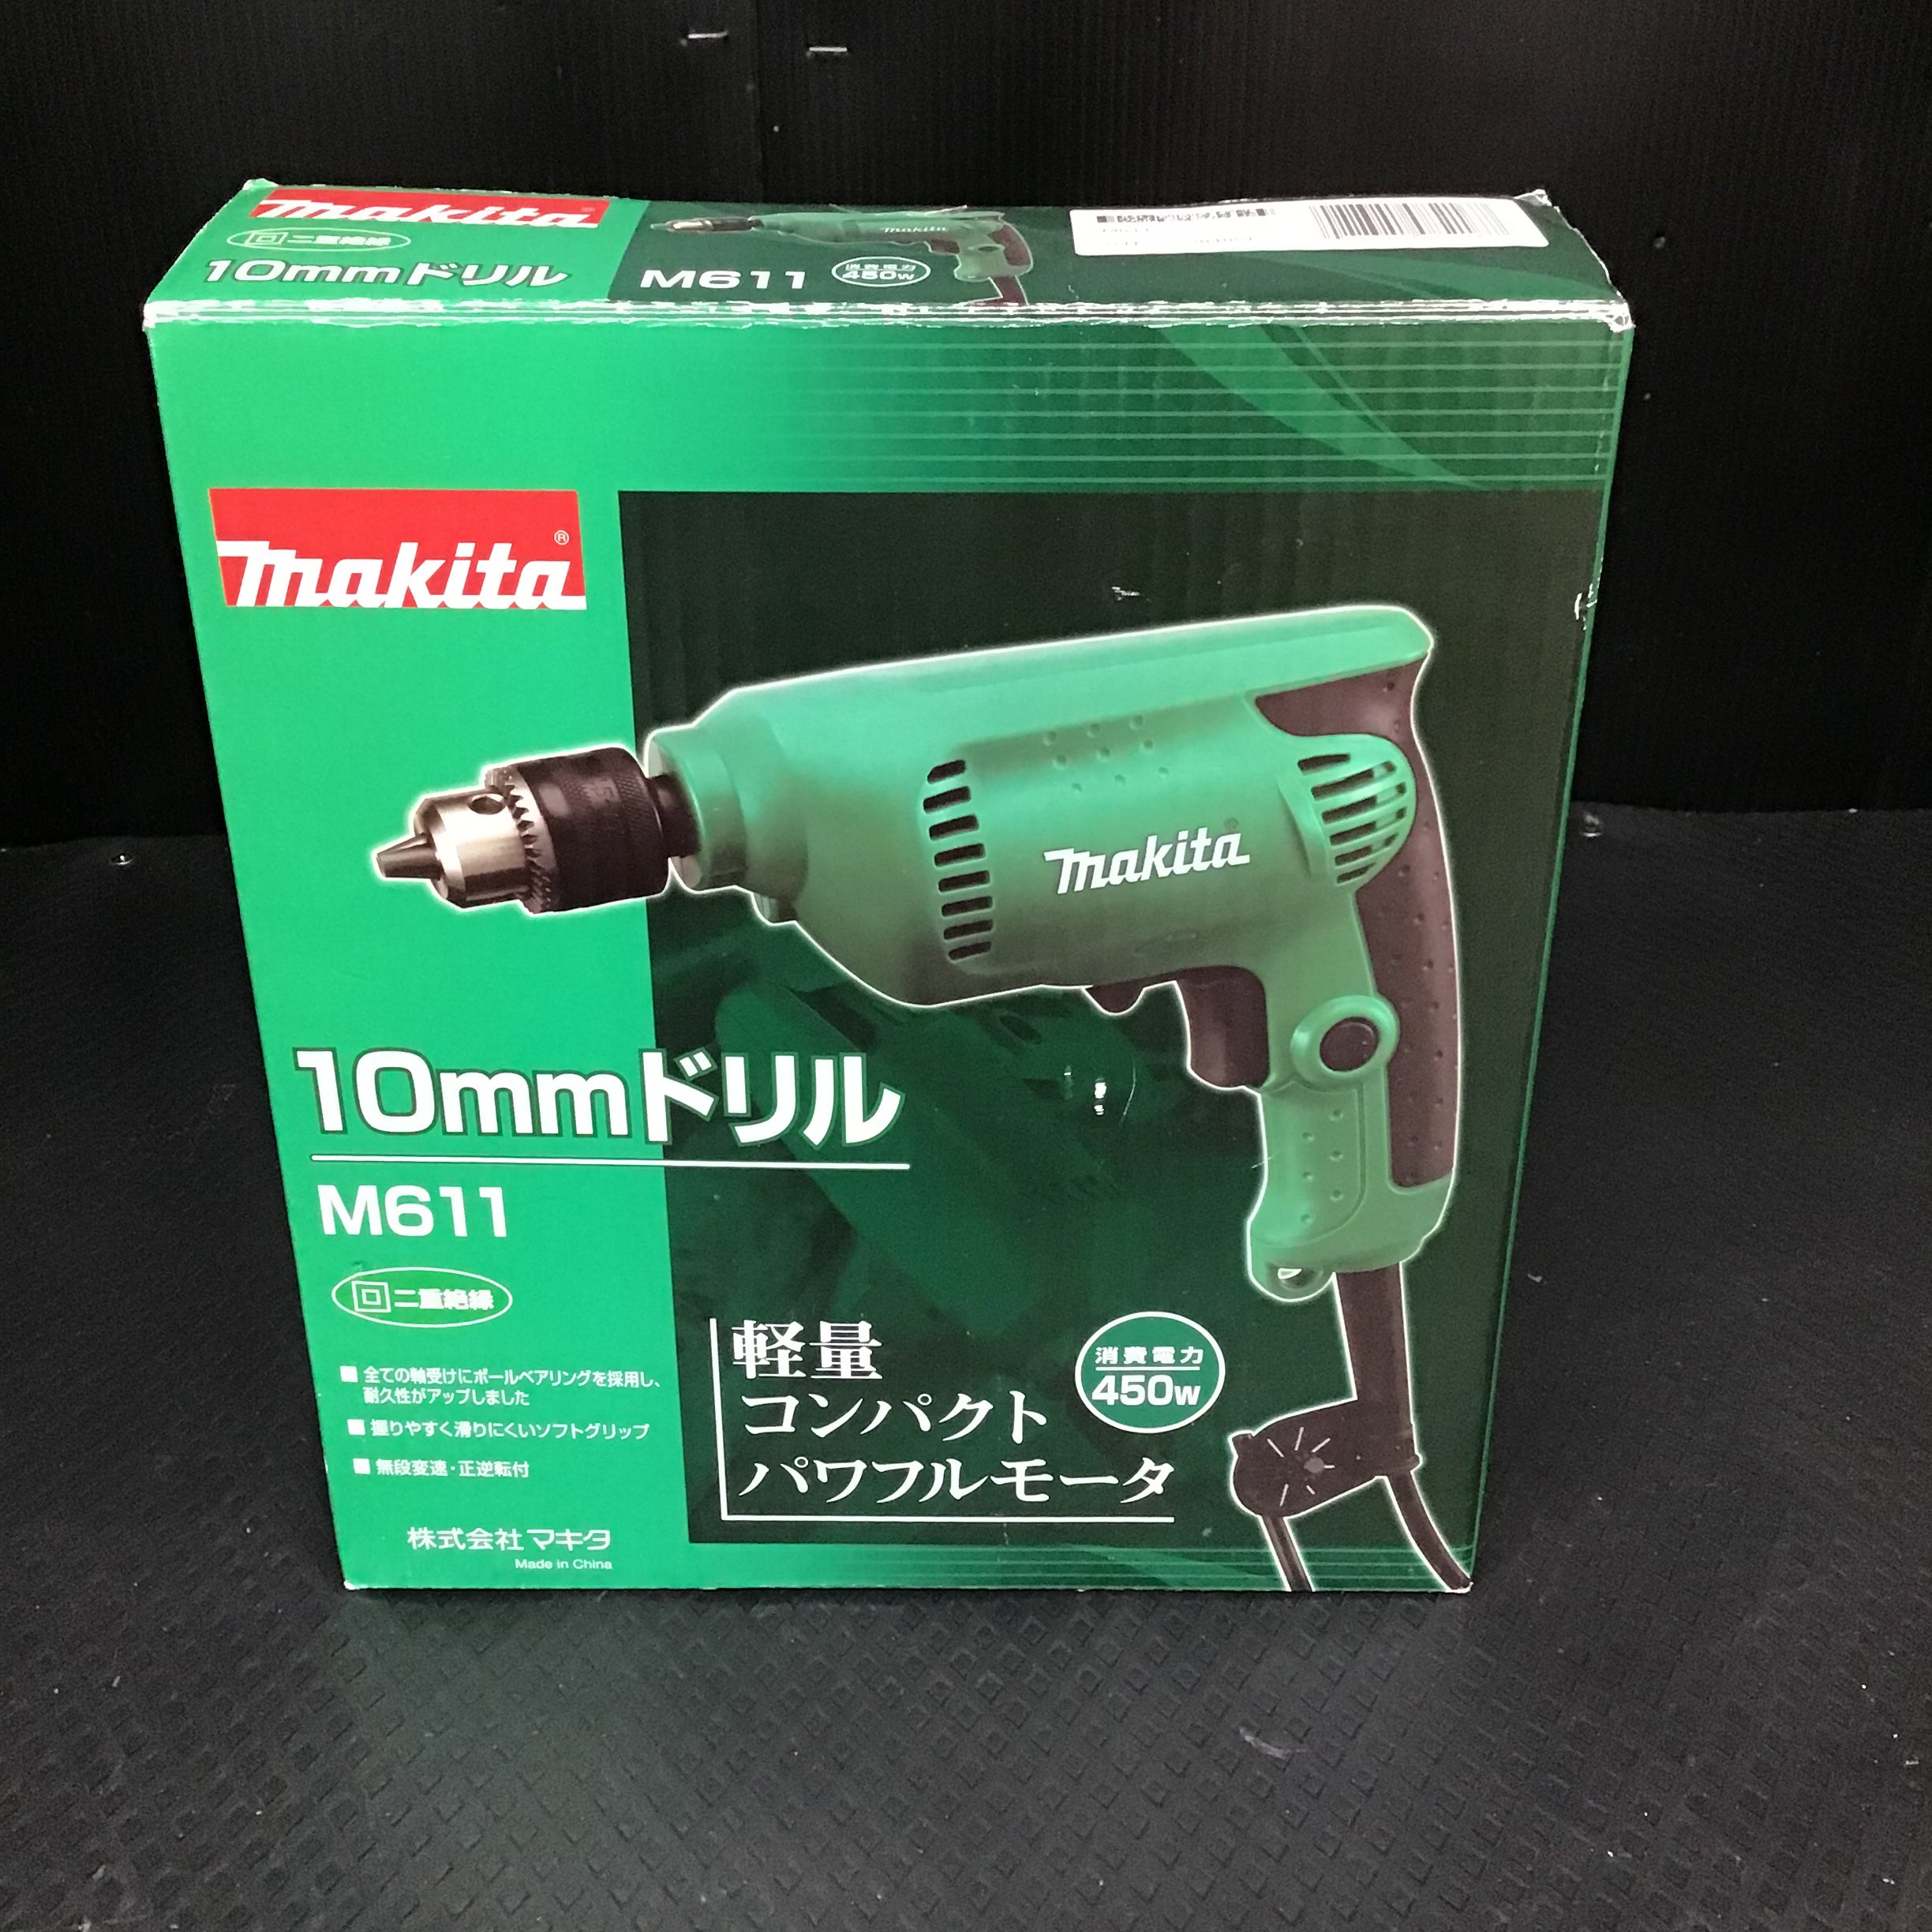 マキタ(Makita) 電気ドリル M611 - DIY工具